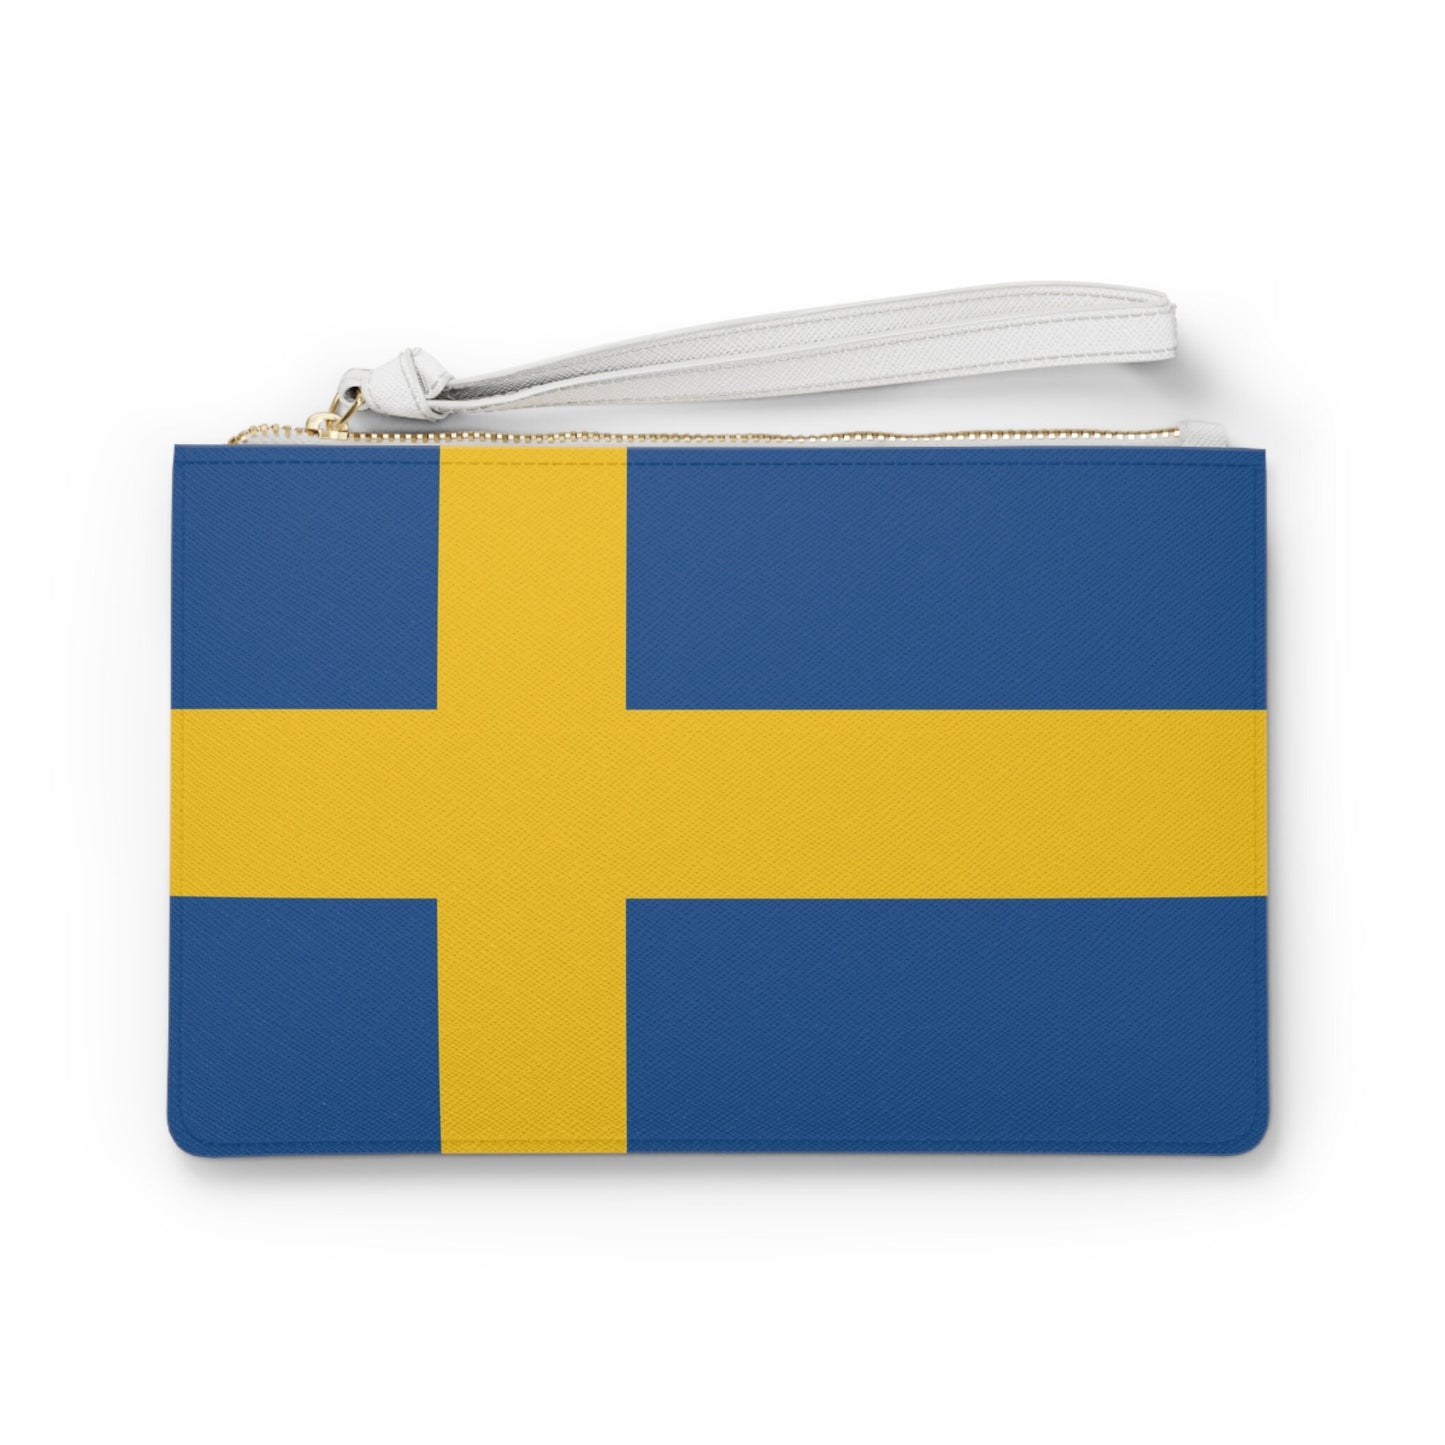 Sweden Flag Clutch Bag